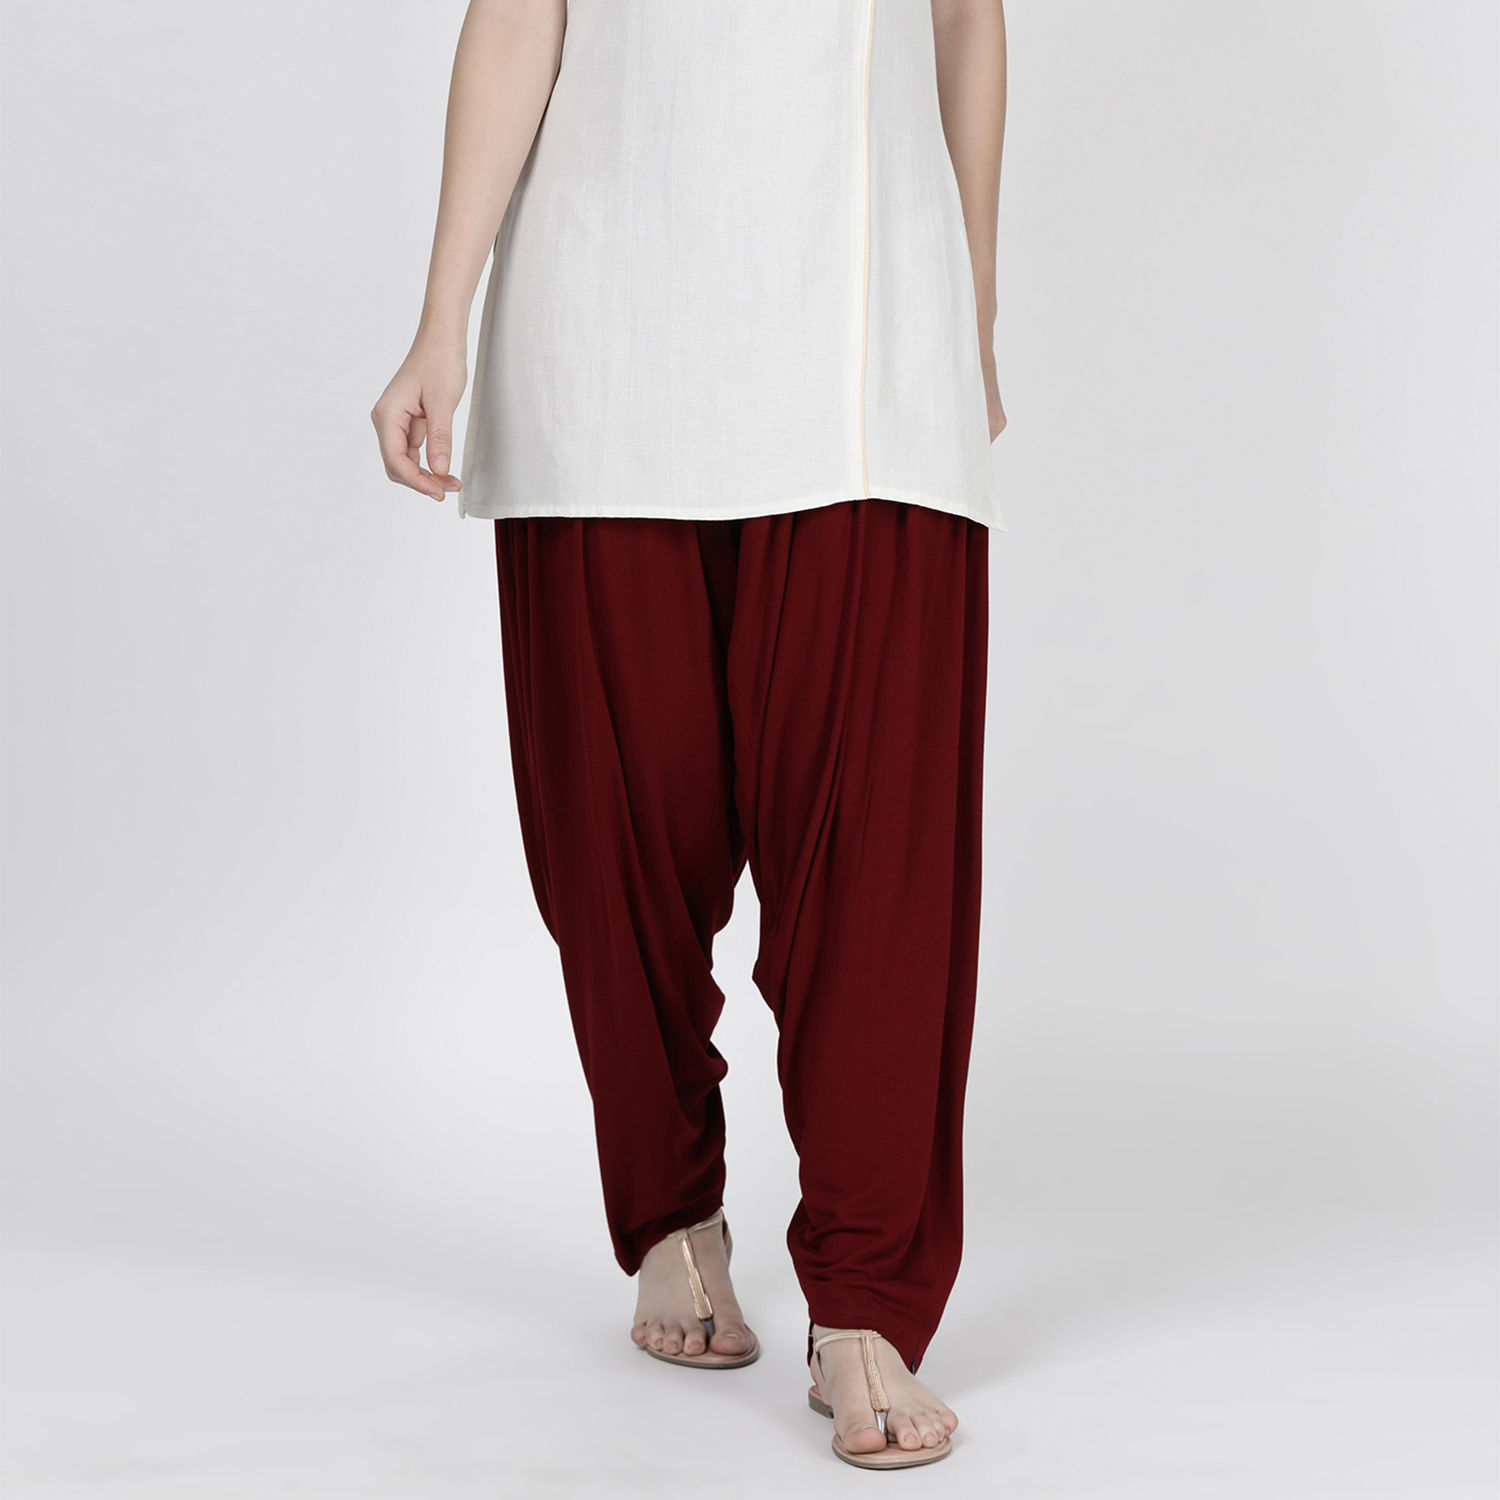 Women's Cotton Patiala Salwar Pants Beautiful Regular Fit Salwar  Pyjama Red Pant | eBay